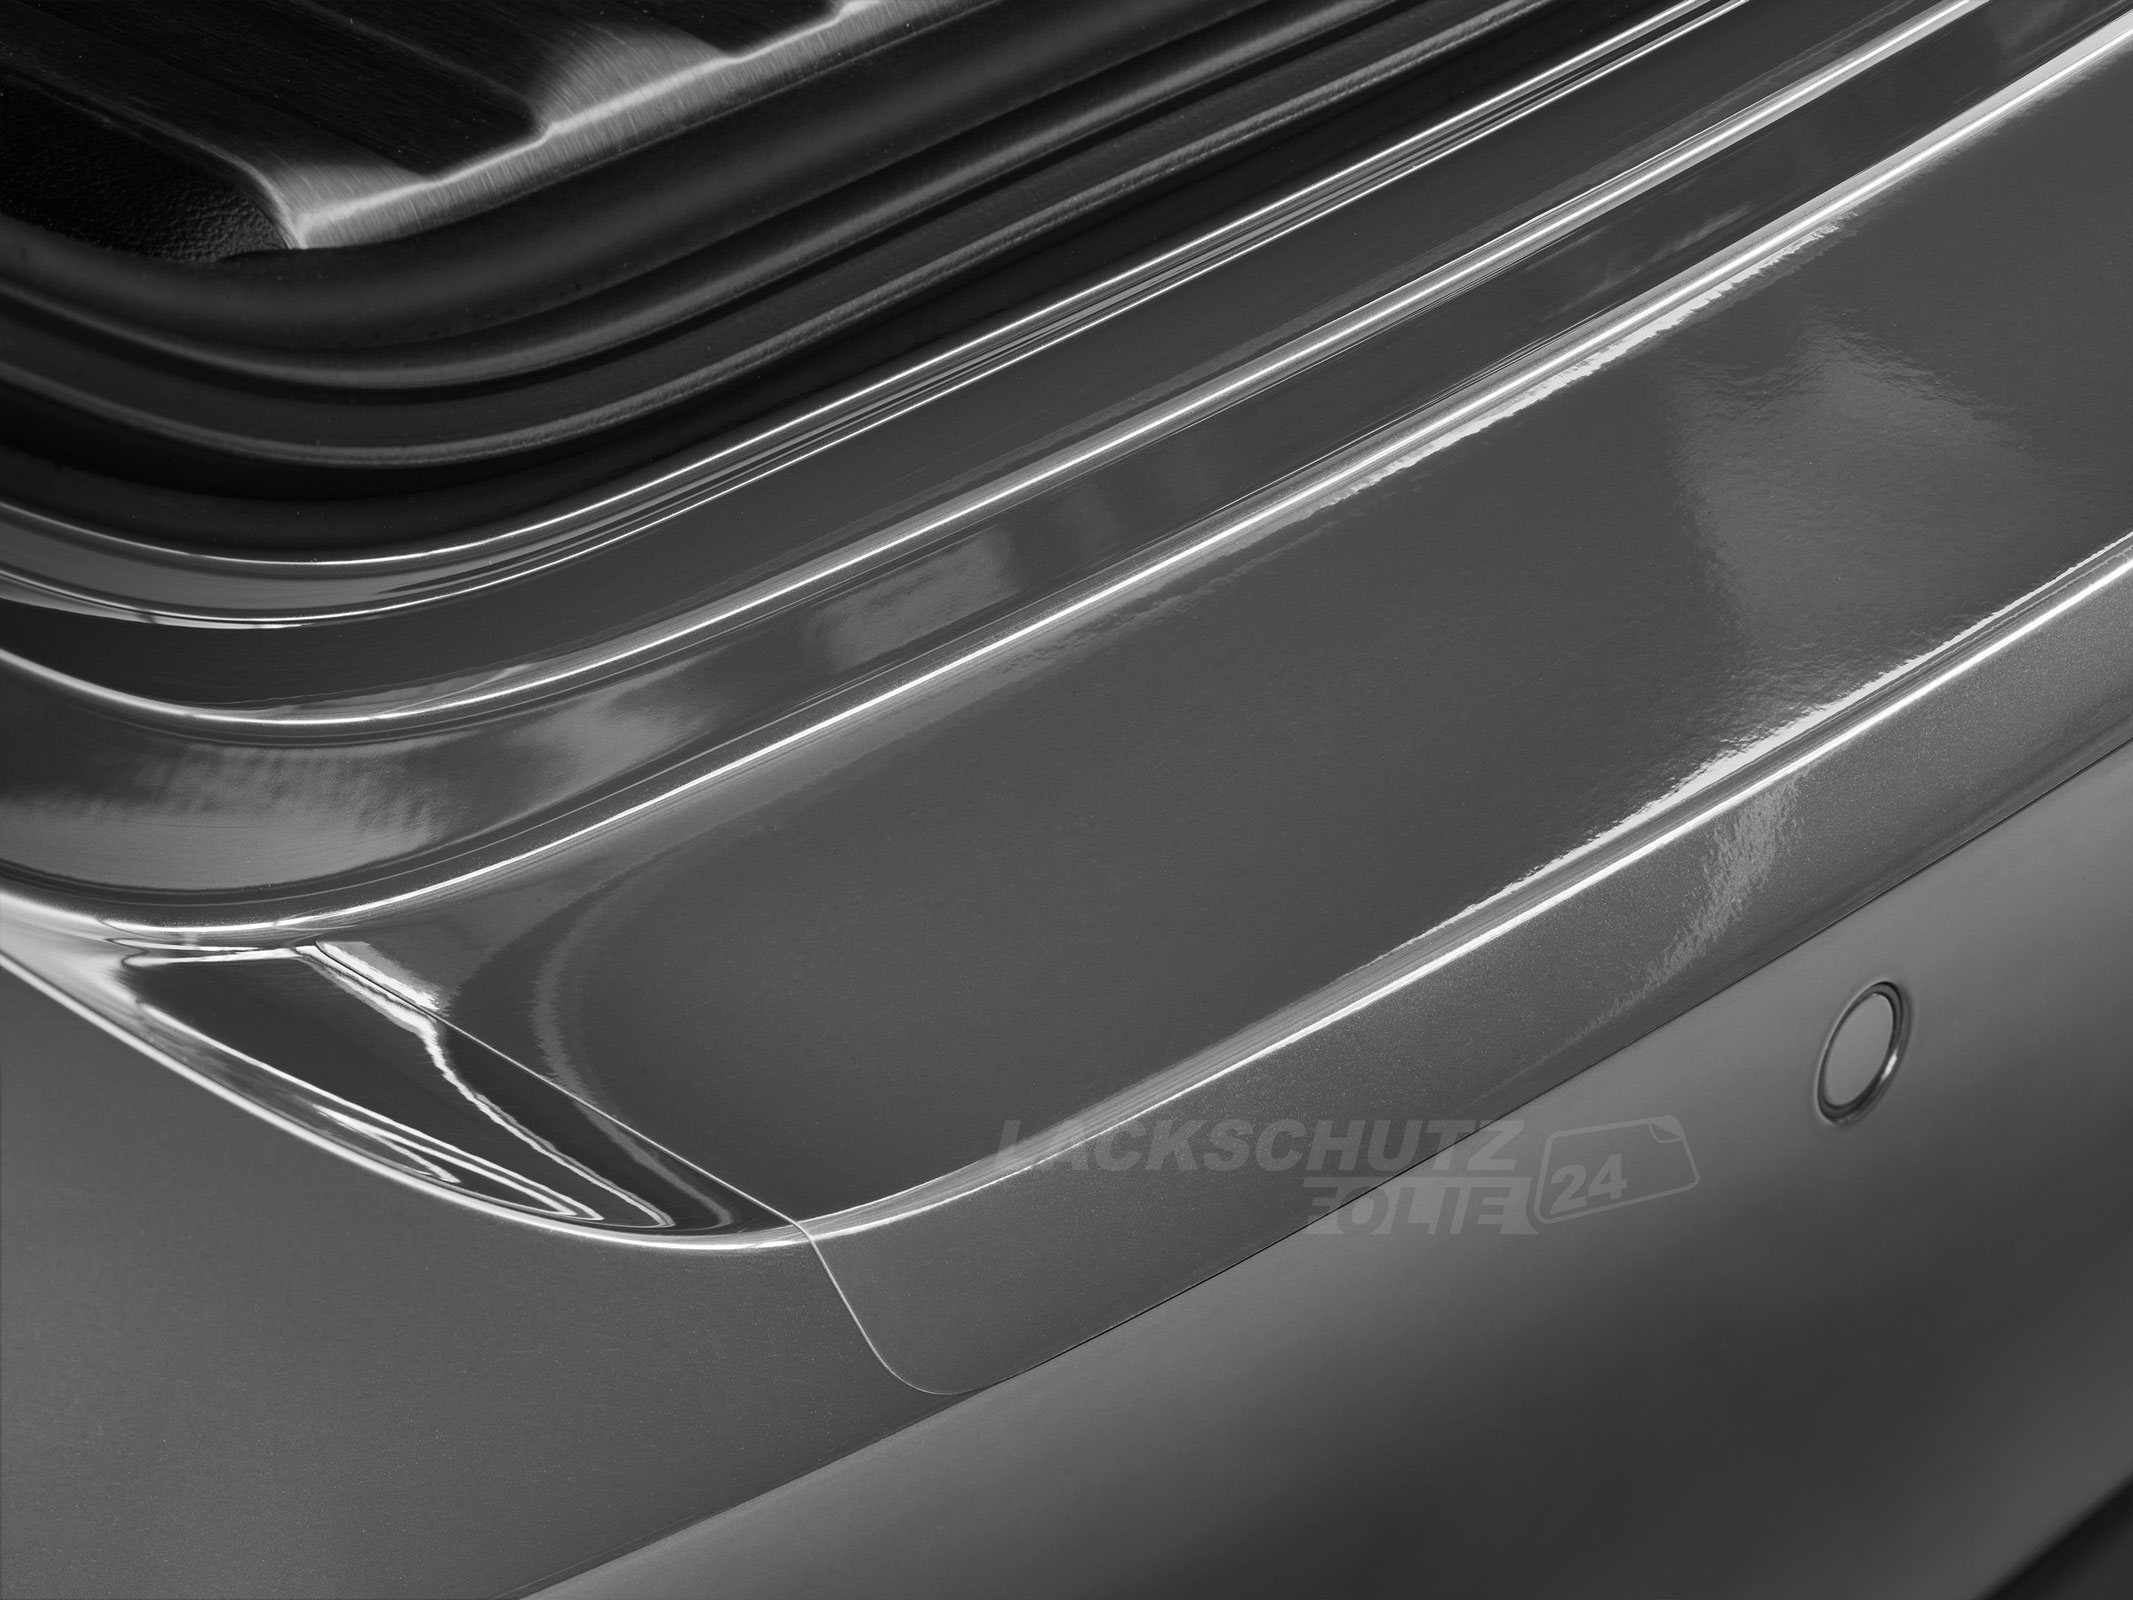 Ladekantenschutzfolie - Transparent Glatt Hochglänzend 240 µm stark für VW / Volkswagen T5  BJ 2003-2010